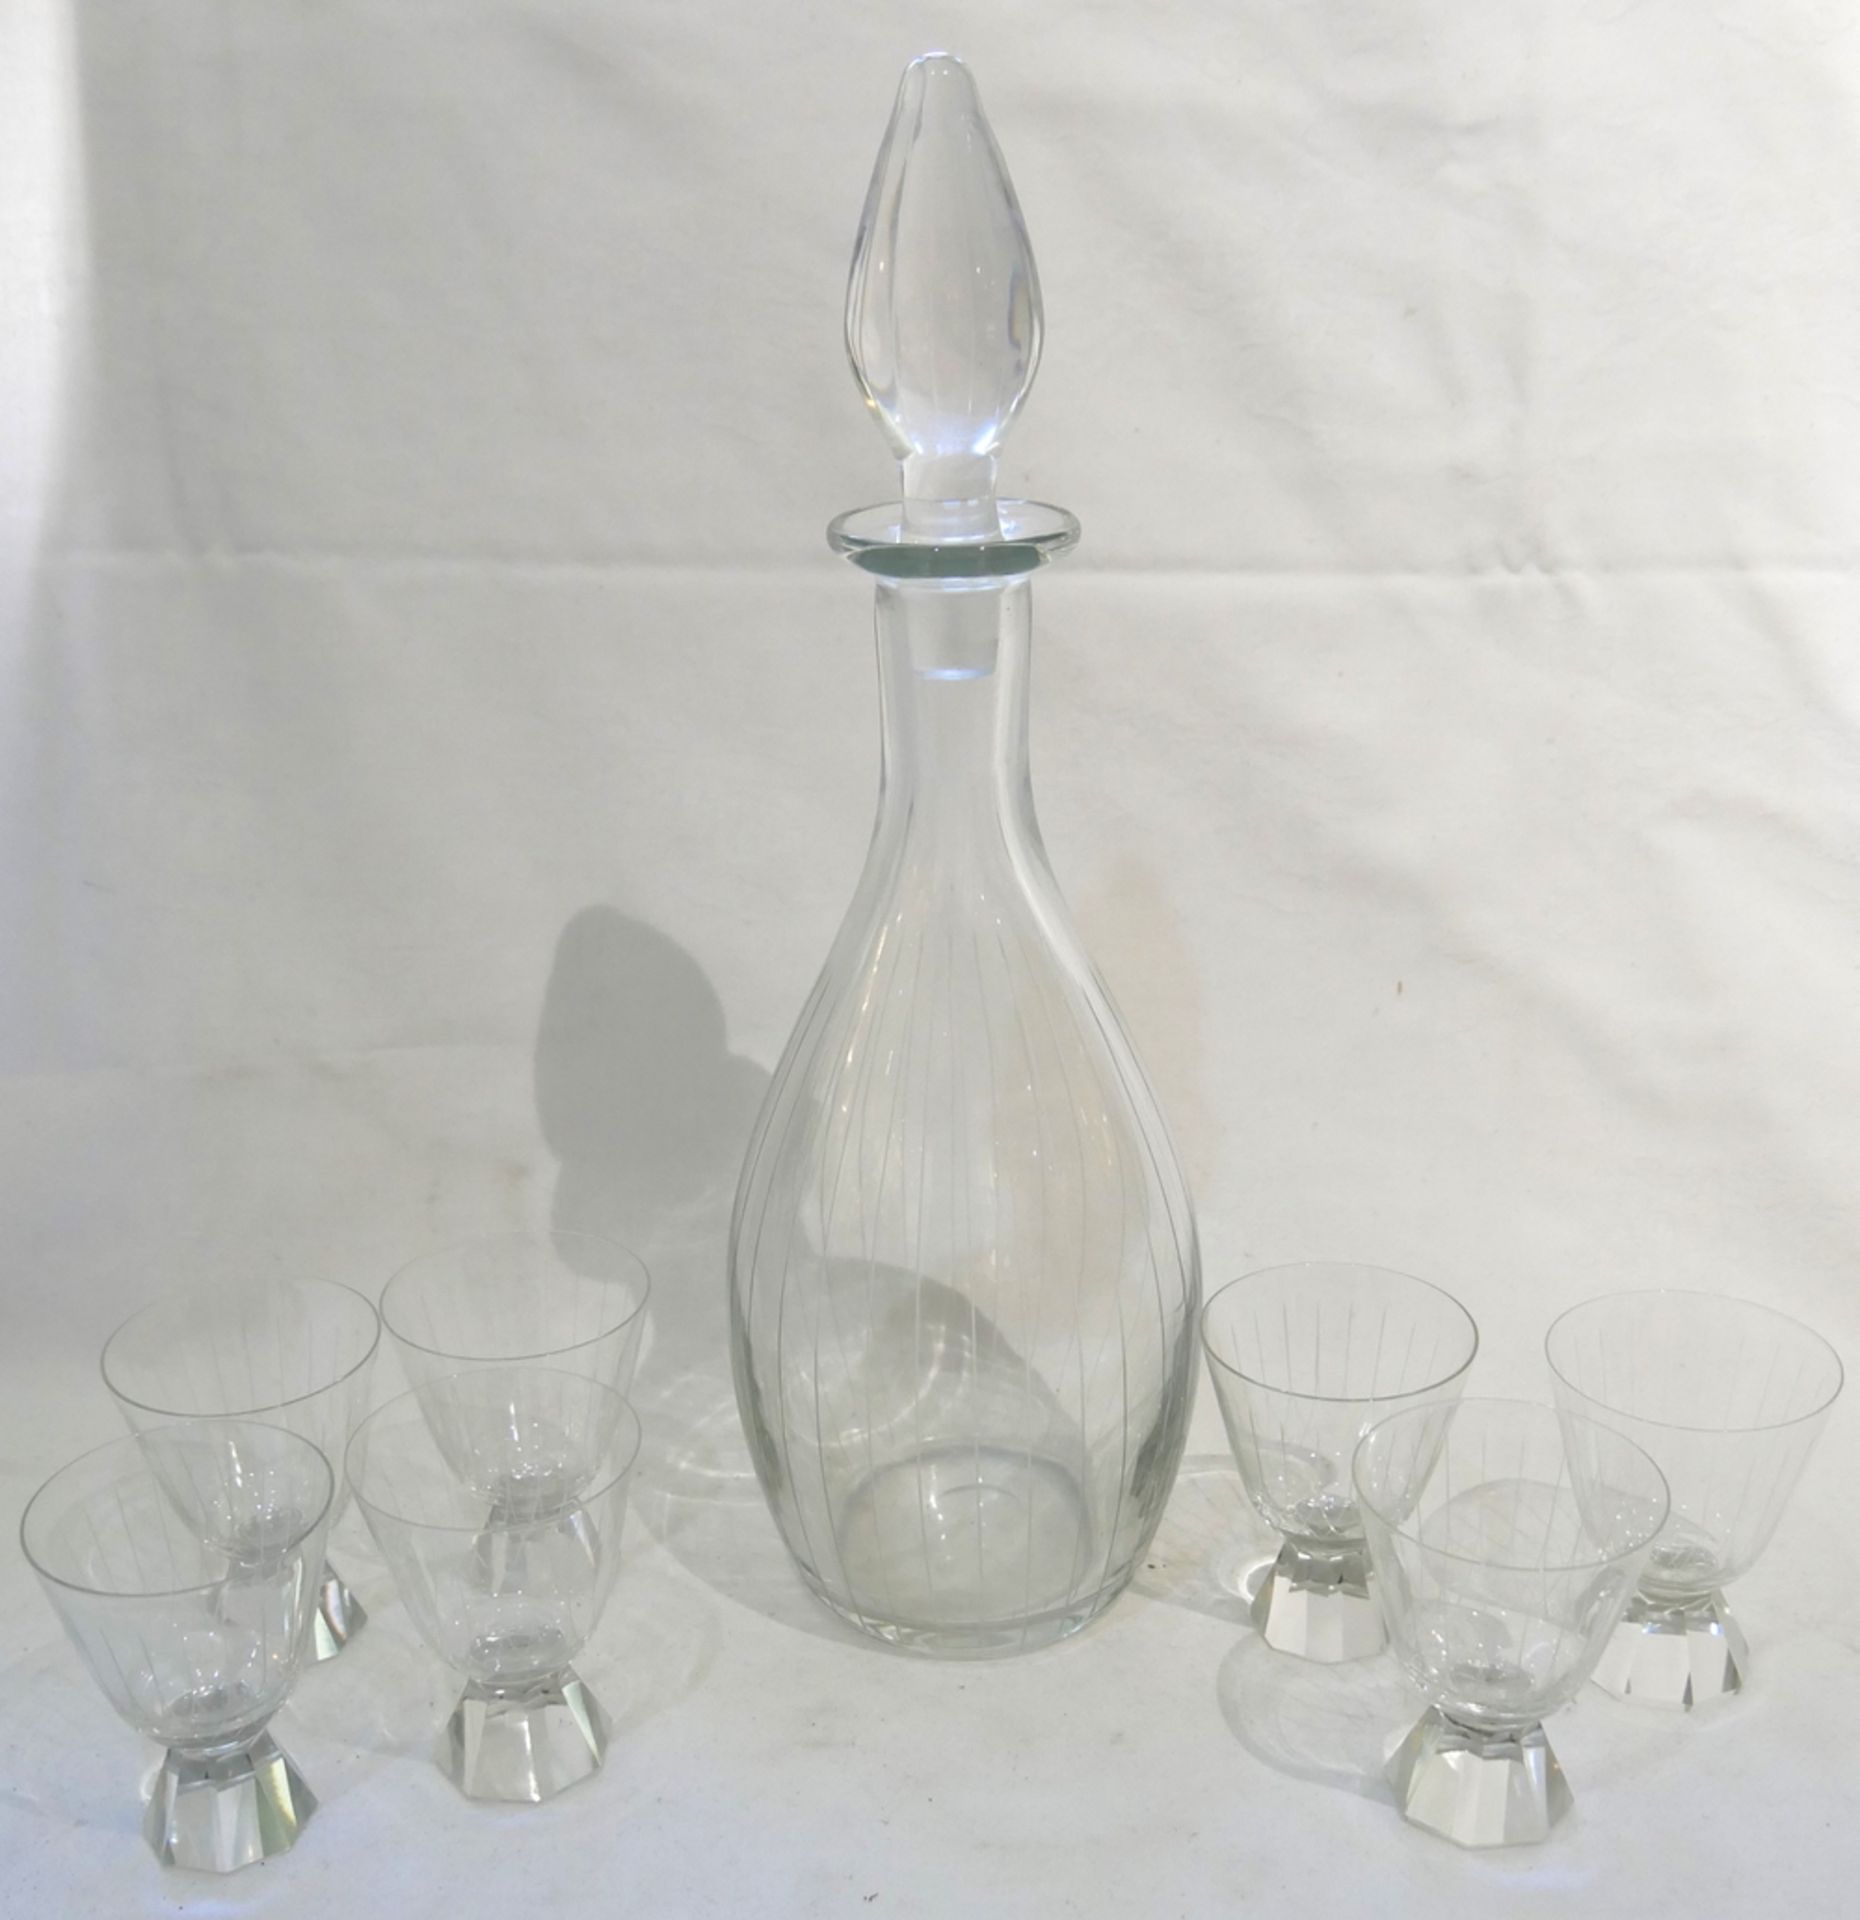 Stöpselflasche, mit 7 passenden Gläsern. Höhe der Flasche mit Stöpsel ca. 37 cm